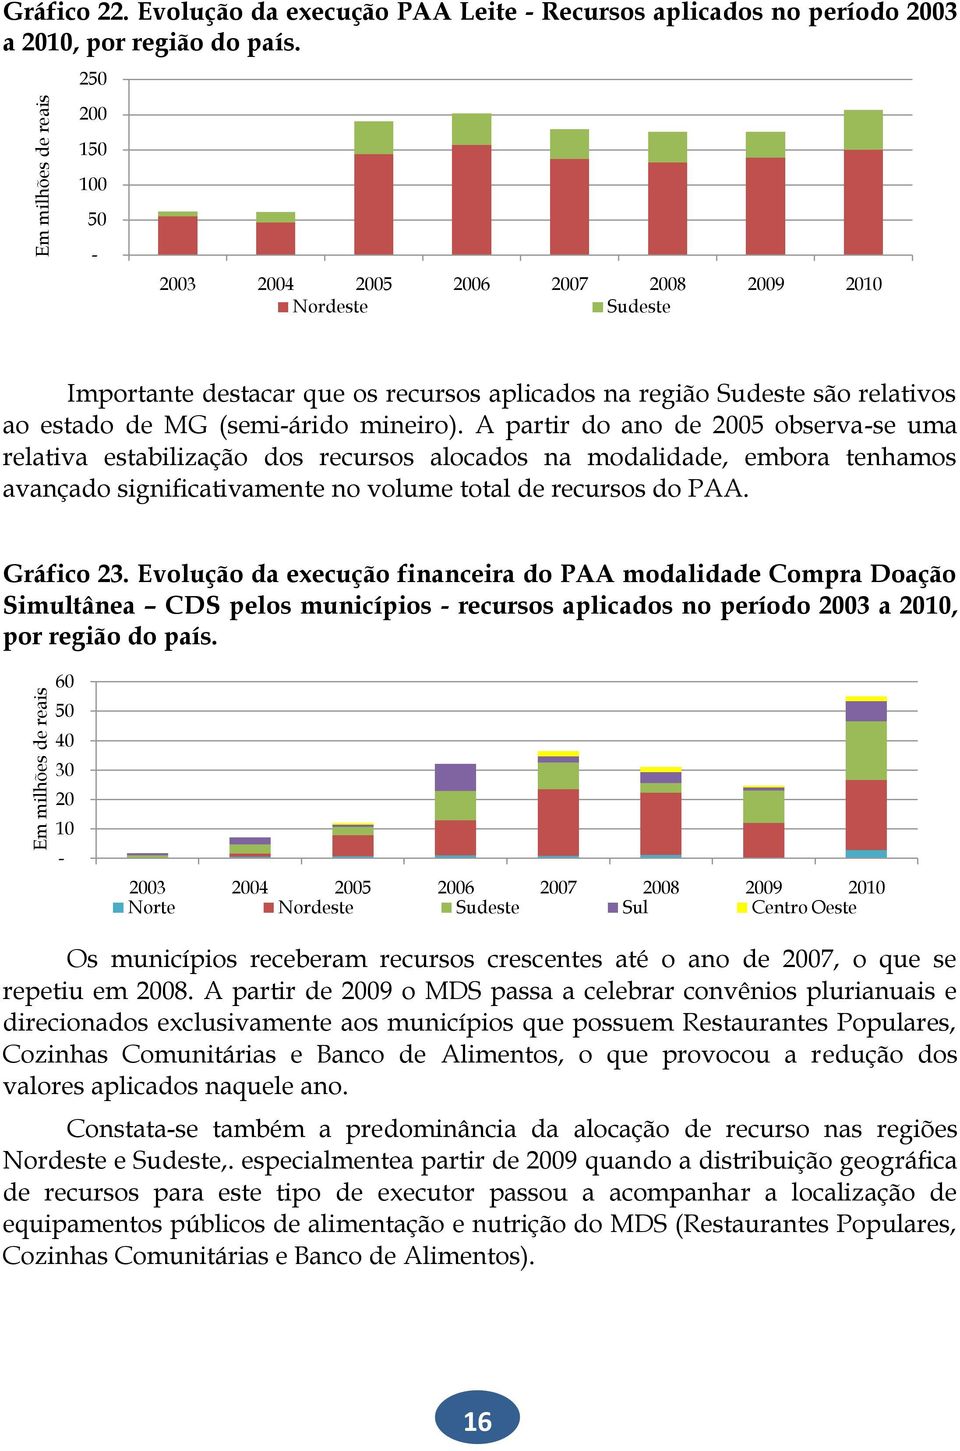 A partir do ano de 2005 observa-se uma relativa estabilização dos recursos alocados na modalidade, embora tenhamos avançado significativamente no volume total de recursos do PAA. Gráfico 23.